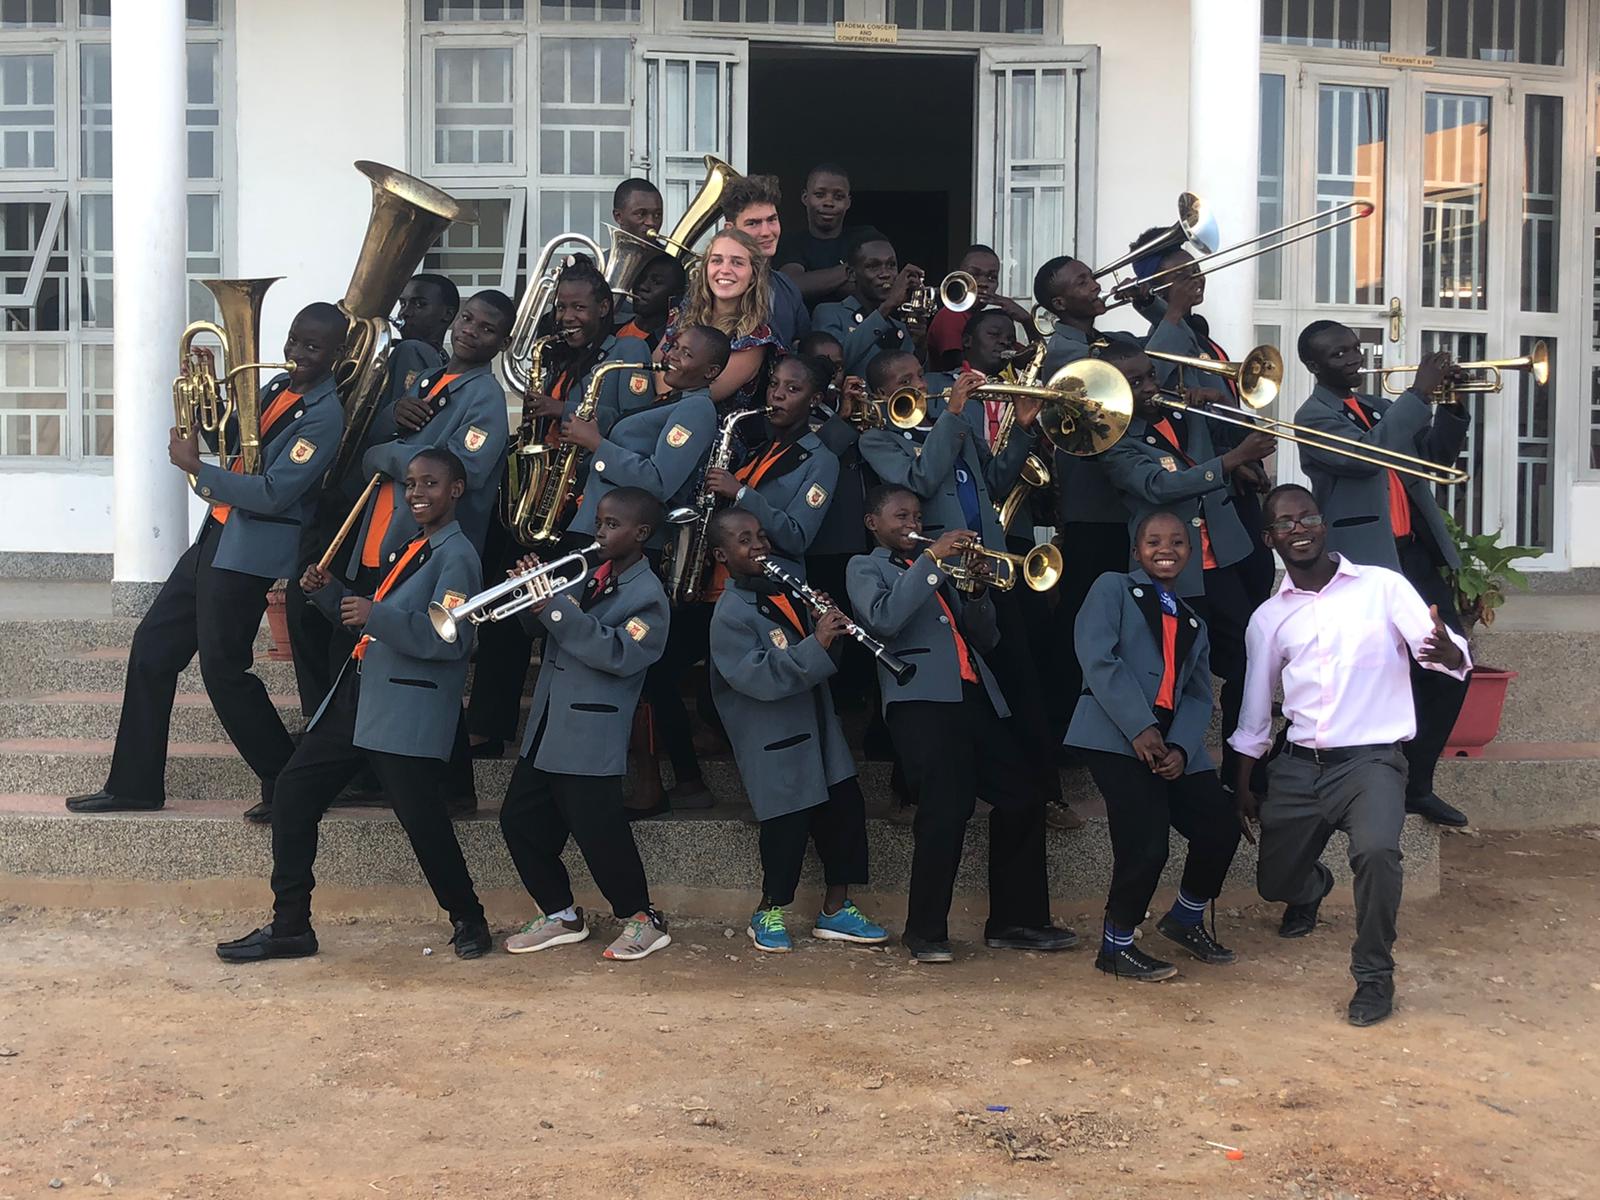 Brass Band in Uganda;
In der Mitte Sharon Gnann vom MVR